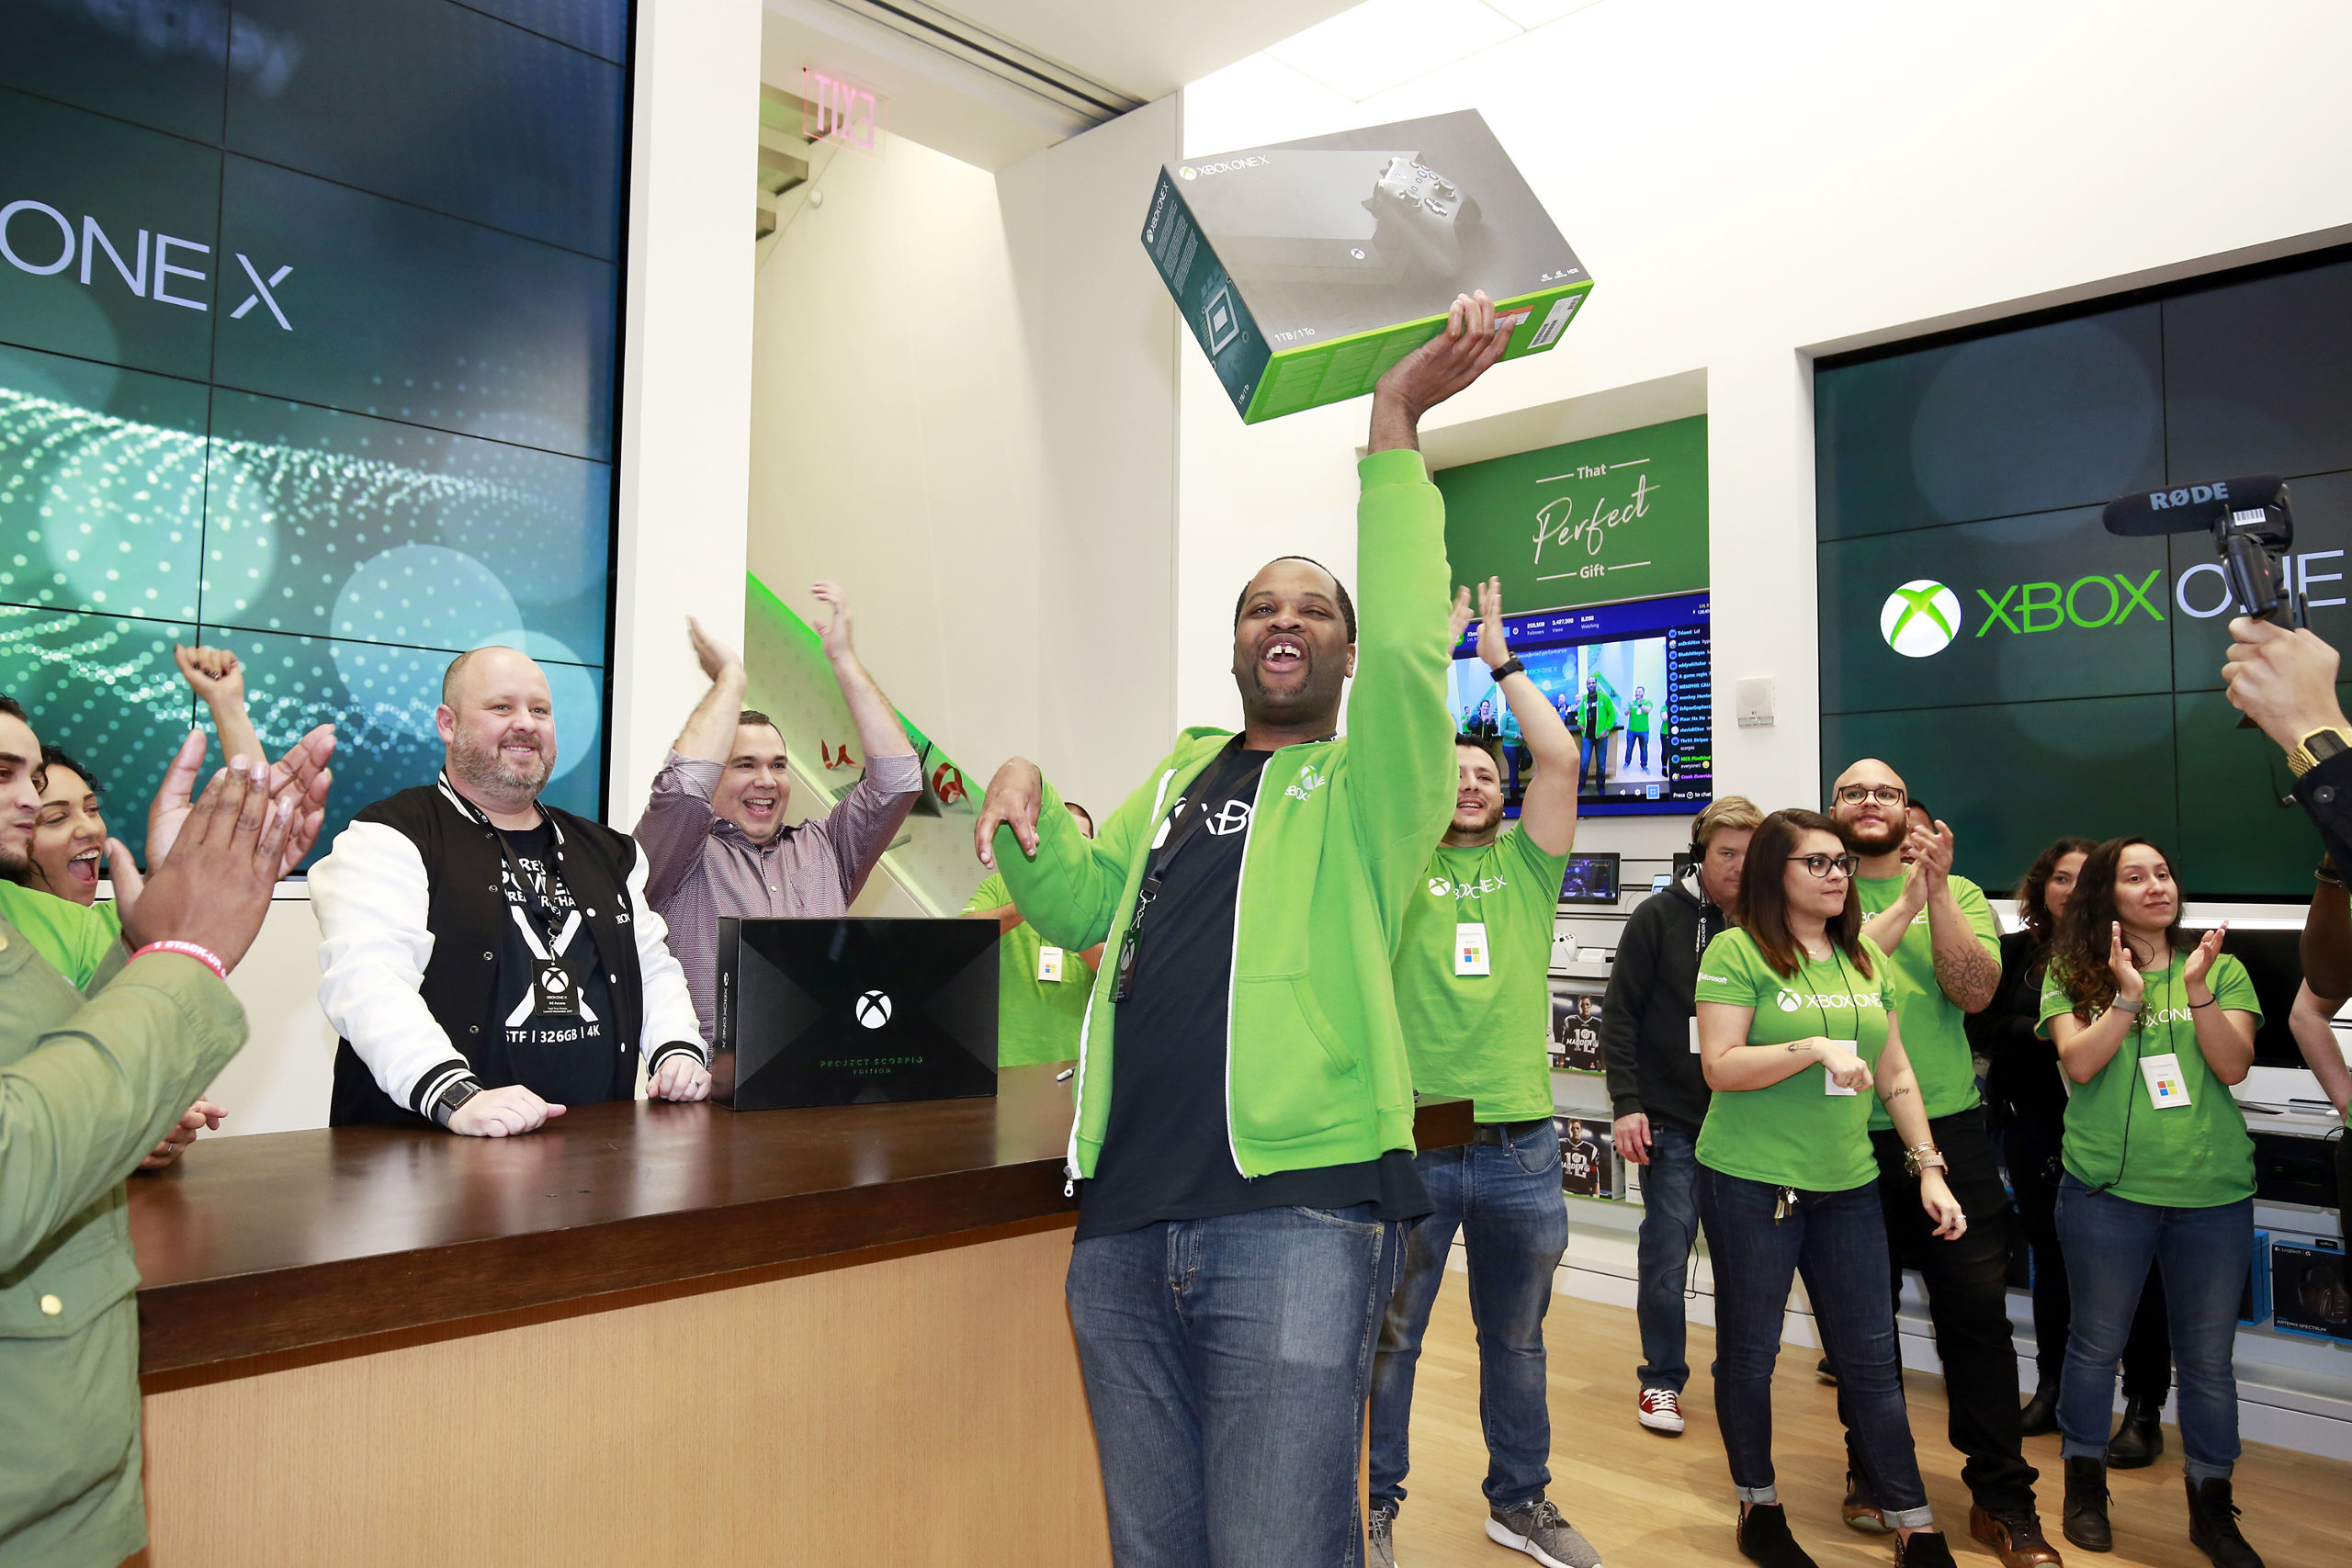 De gelukkige bezitter van de eerste Xbox One X die werd verkocht in de Microsoft Store op Fifth Avenue in New York.